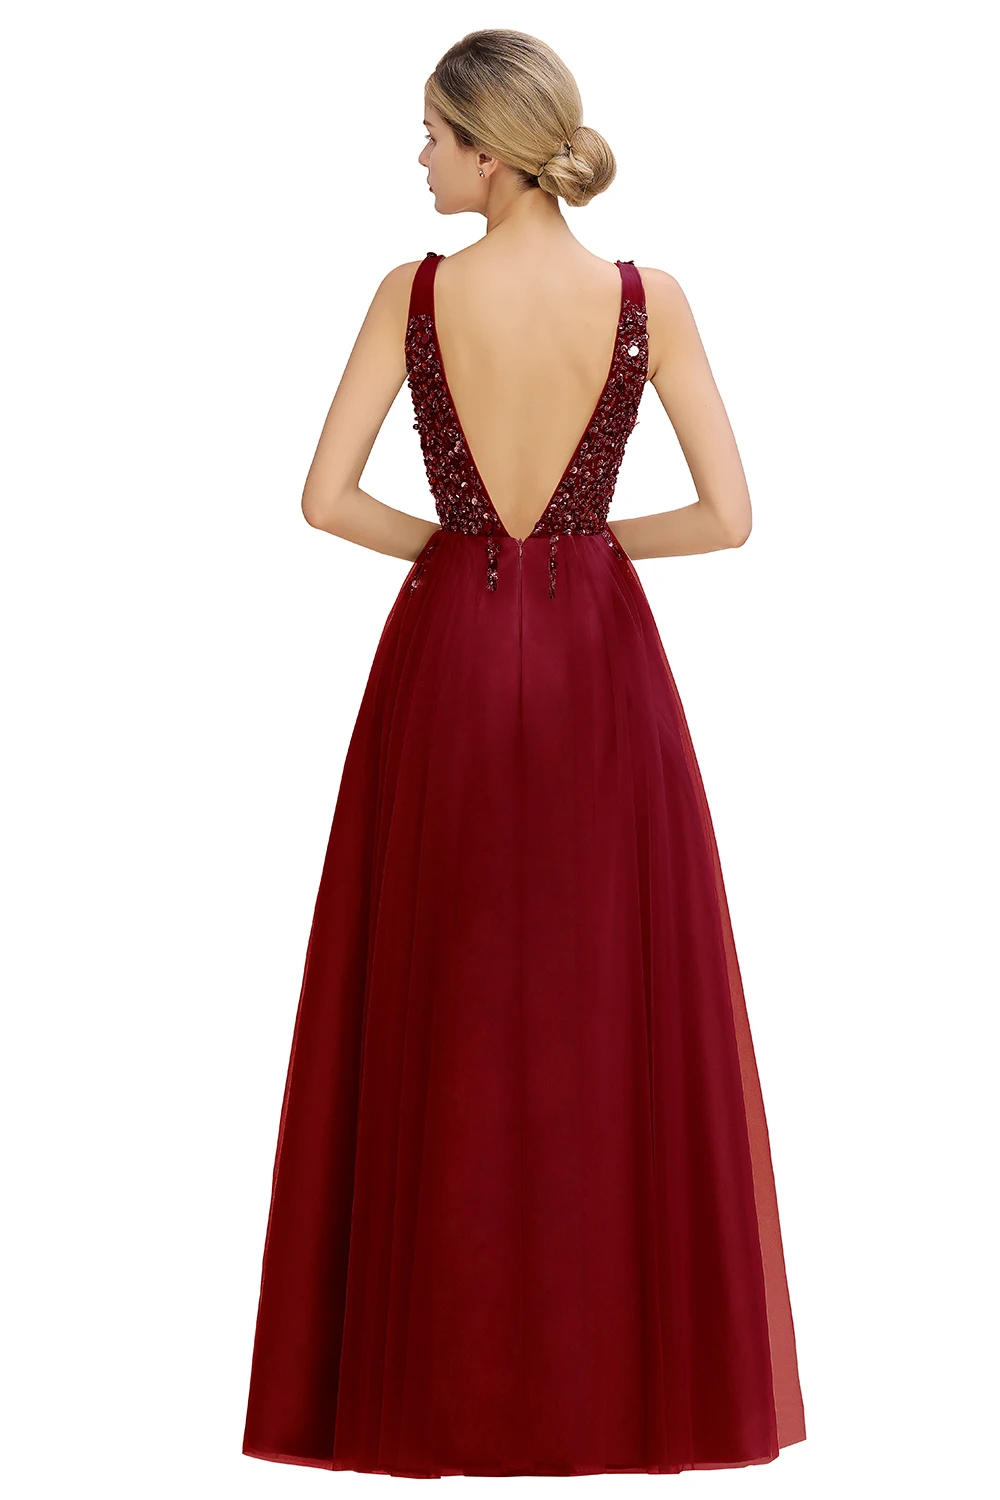 Misshow вечернее платье бордовое длинное фатиновое торжественное вечерние платье роскошное блестящее платье с v-образным вырезом без рукавов robe de soiree